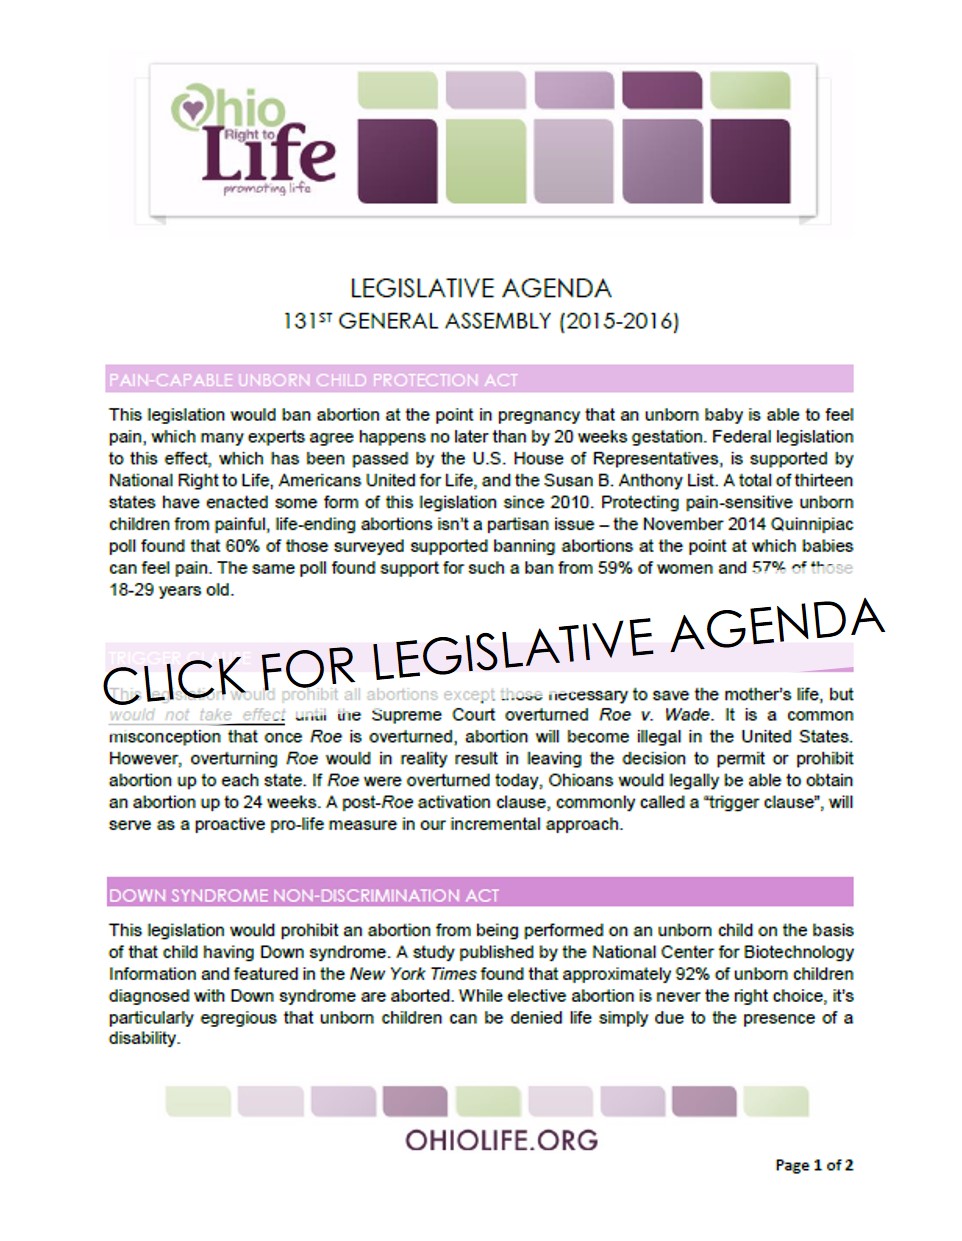 Screen_shot_-_Legislative_Agenda_for_website.jpg